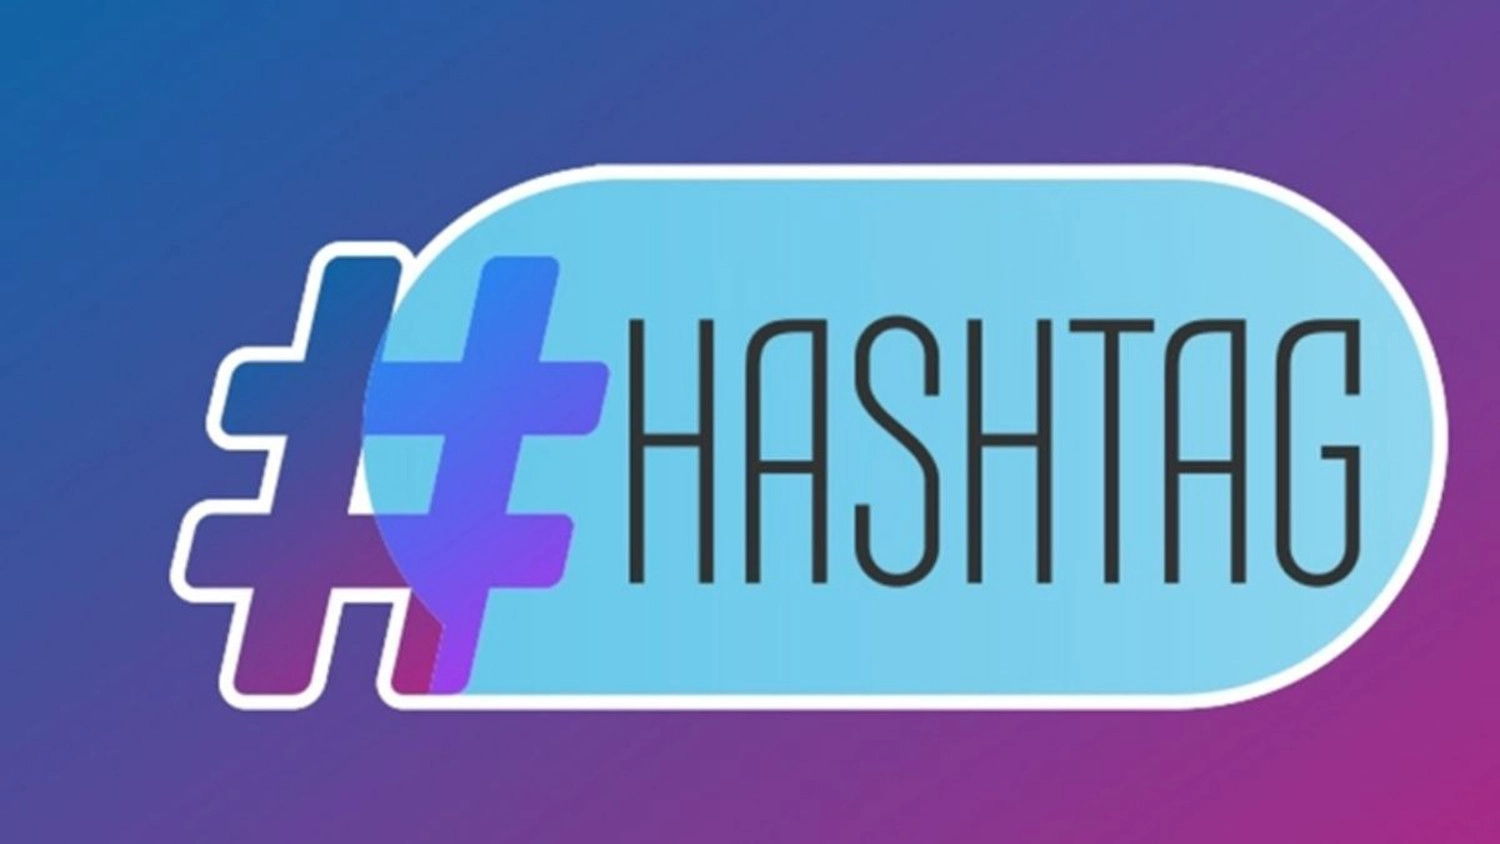 Sử dụng hashtag ngắn và cụ thể